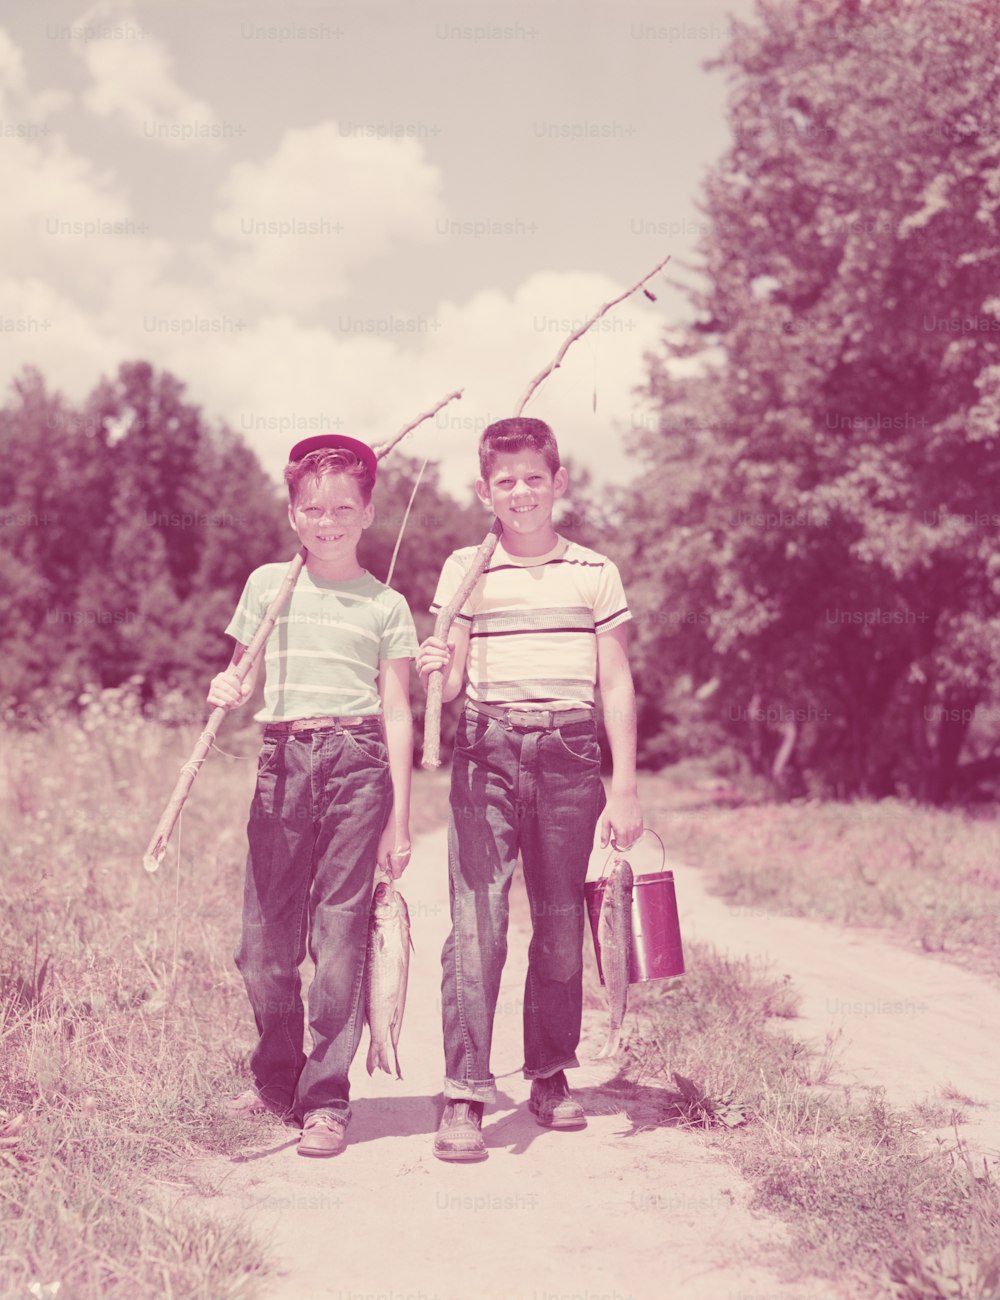 STATI UNITI - 1950 circa: due ragazzi che camminano lungo la corsia, portando canne da pesca ramoscelli.